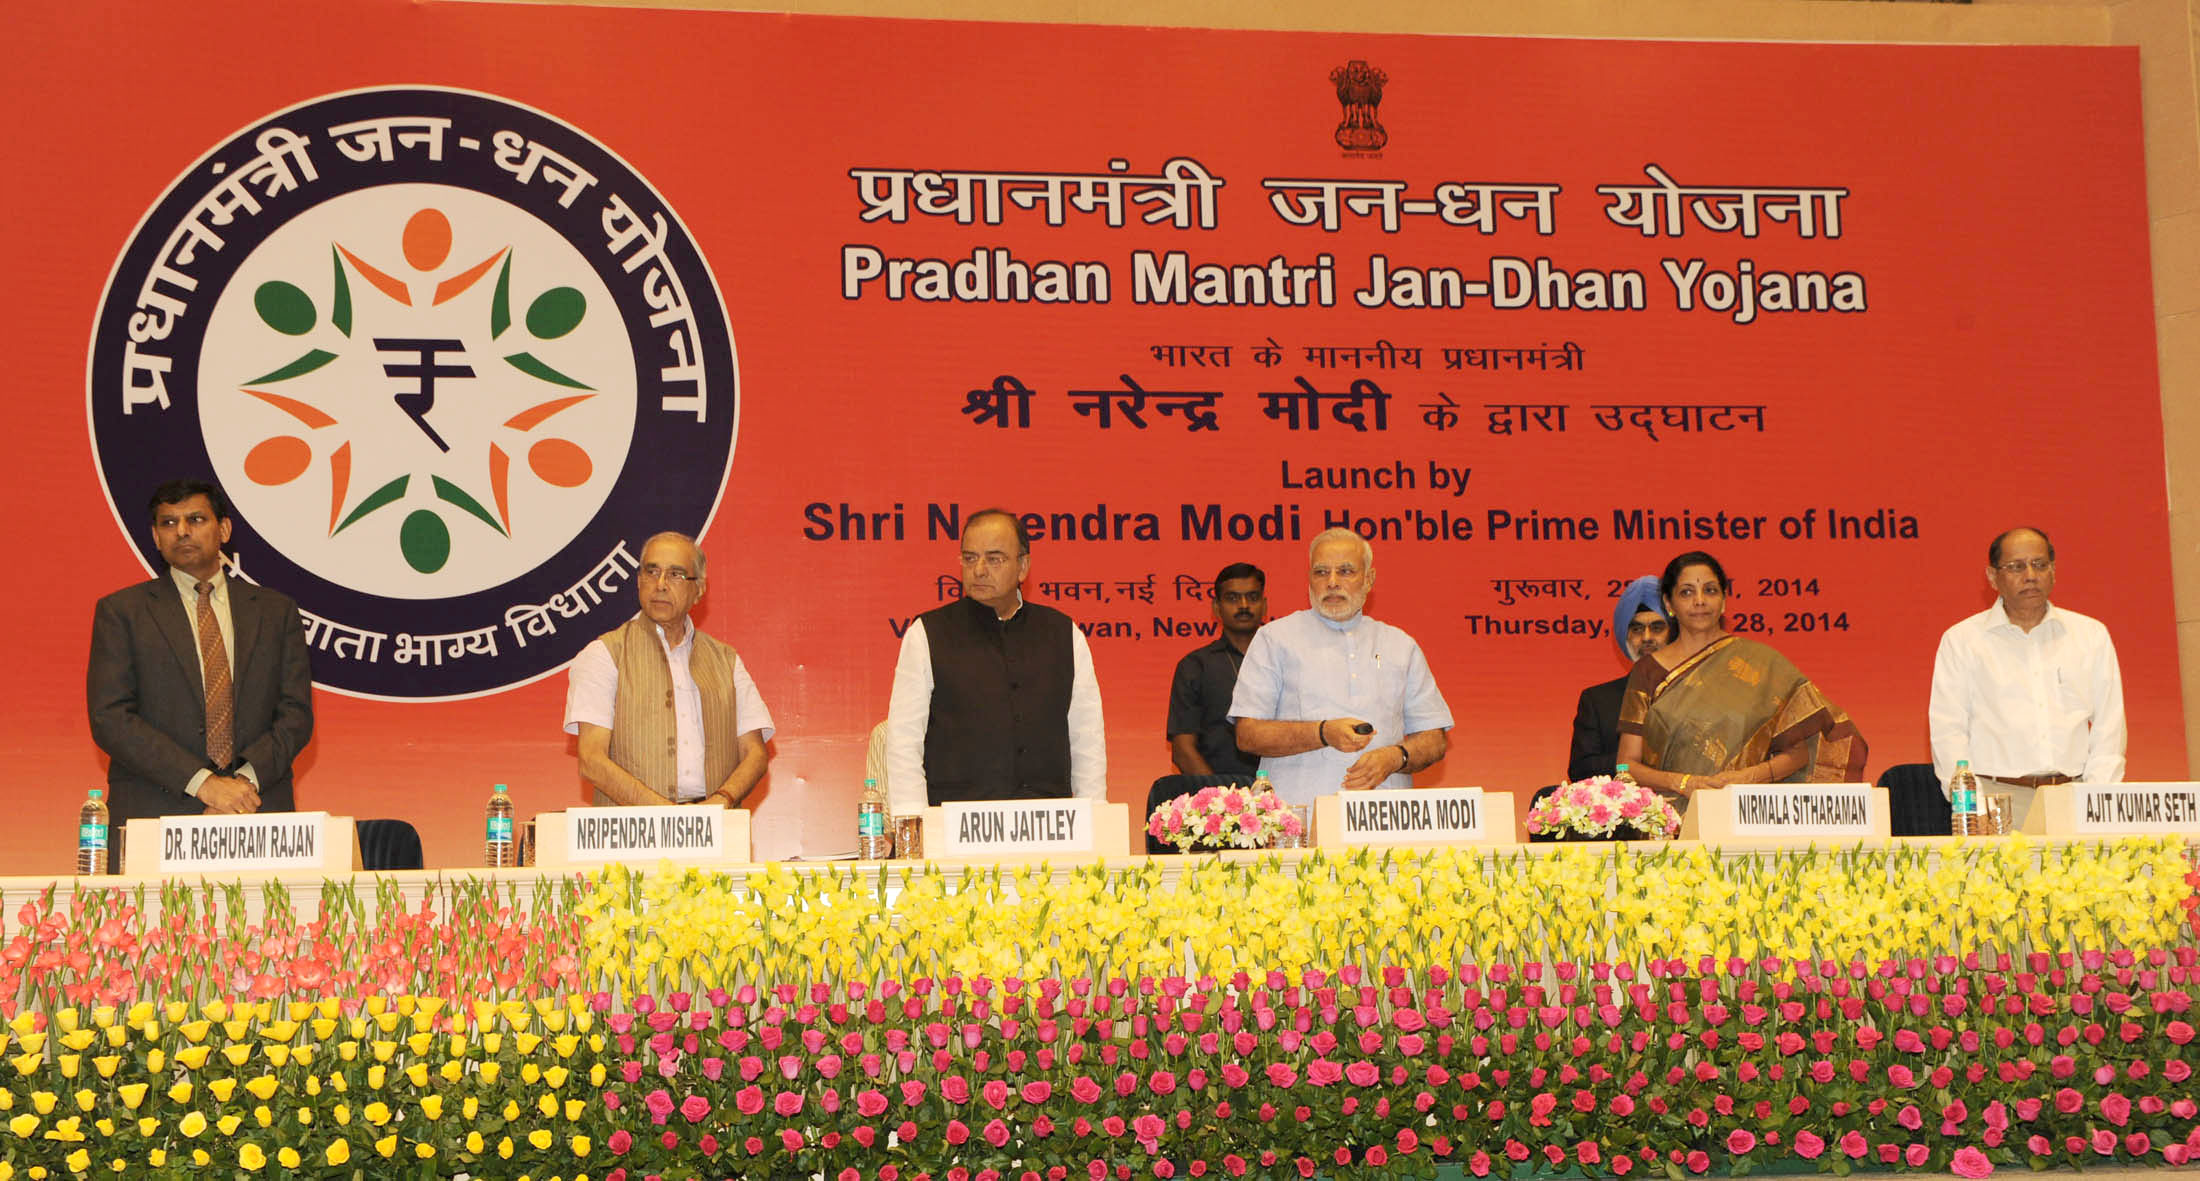 Pradhan Mantri Jan Dhan Yojana (PMJDY)